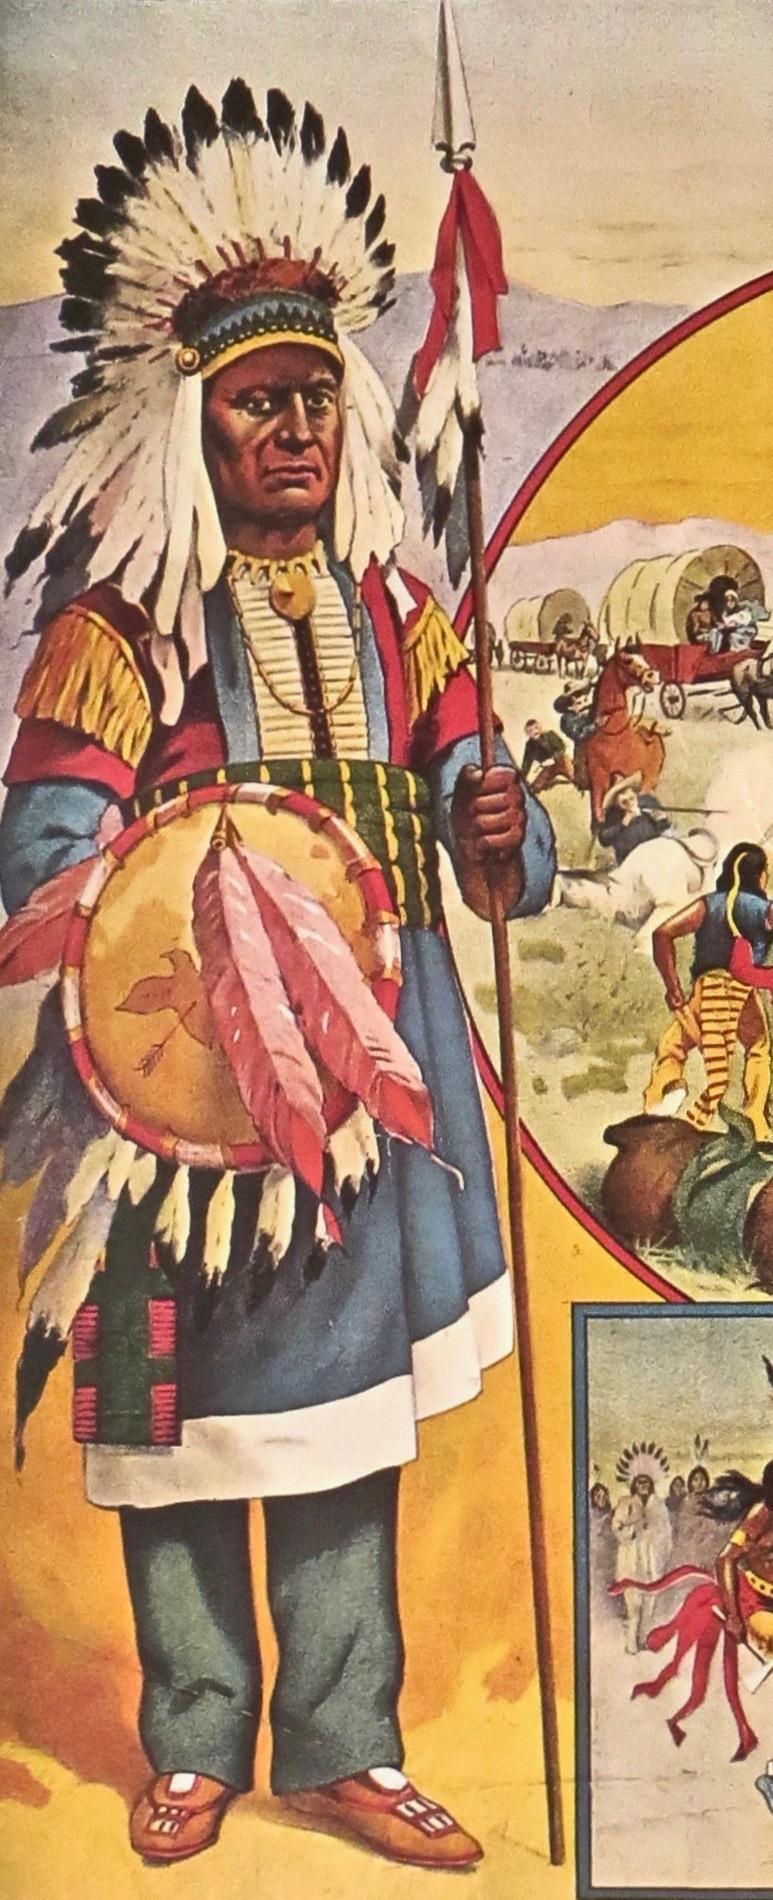 Cette affiche de cirque lumineuse et colorée, pleine d'action, représente la quintessence des images de Buffalo Bill avec des Indiens et des scènes de l'Ouest, des personnages en costume d'apparat utilisés dans ses spectacles du Far West et dans les